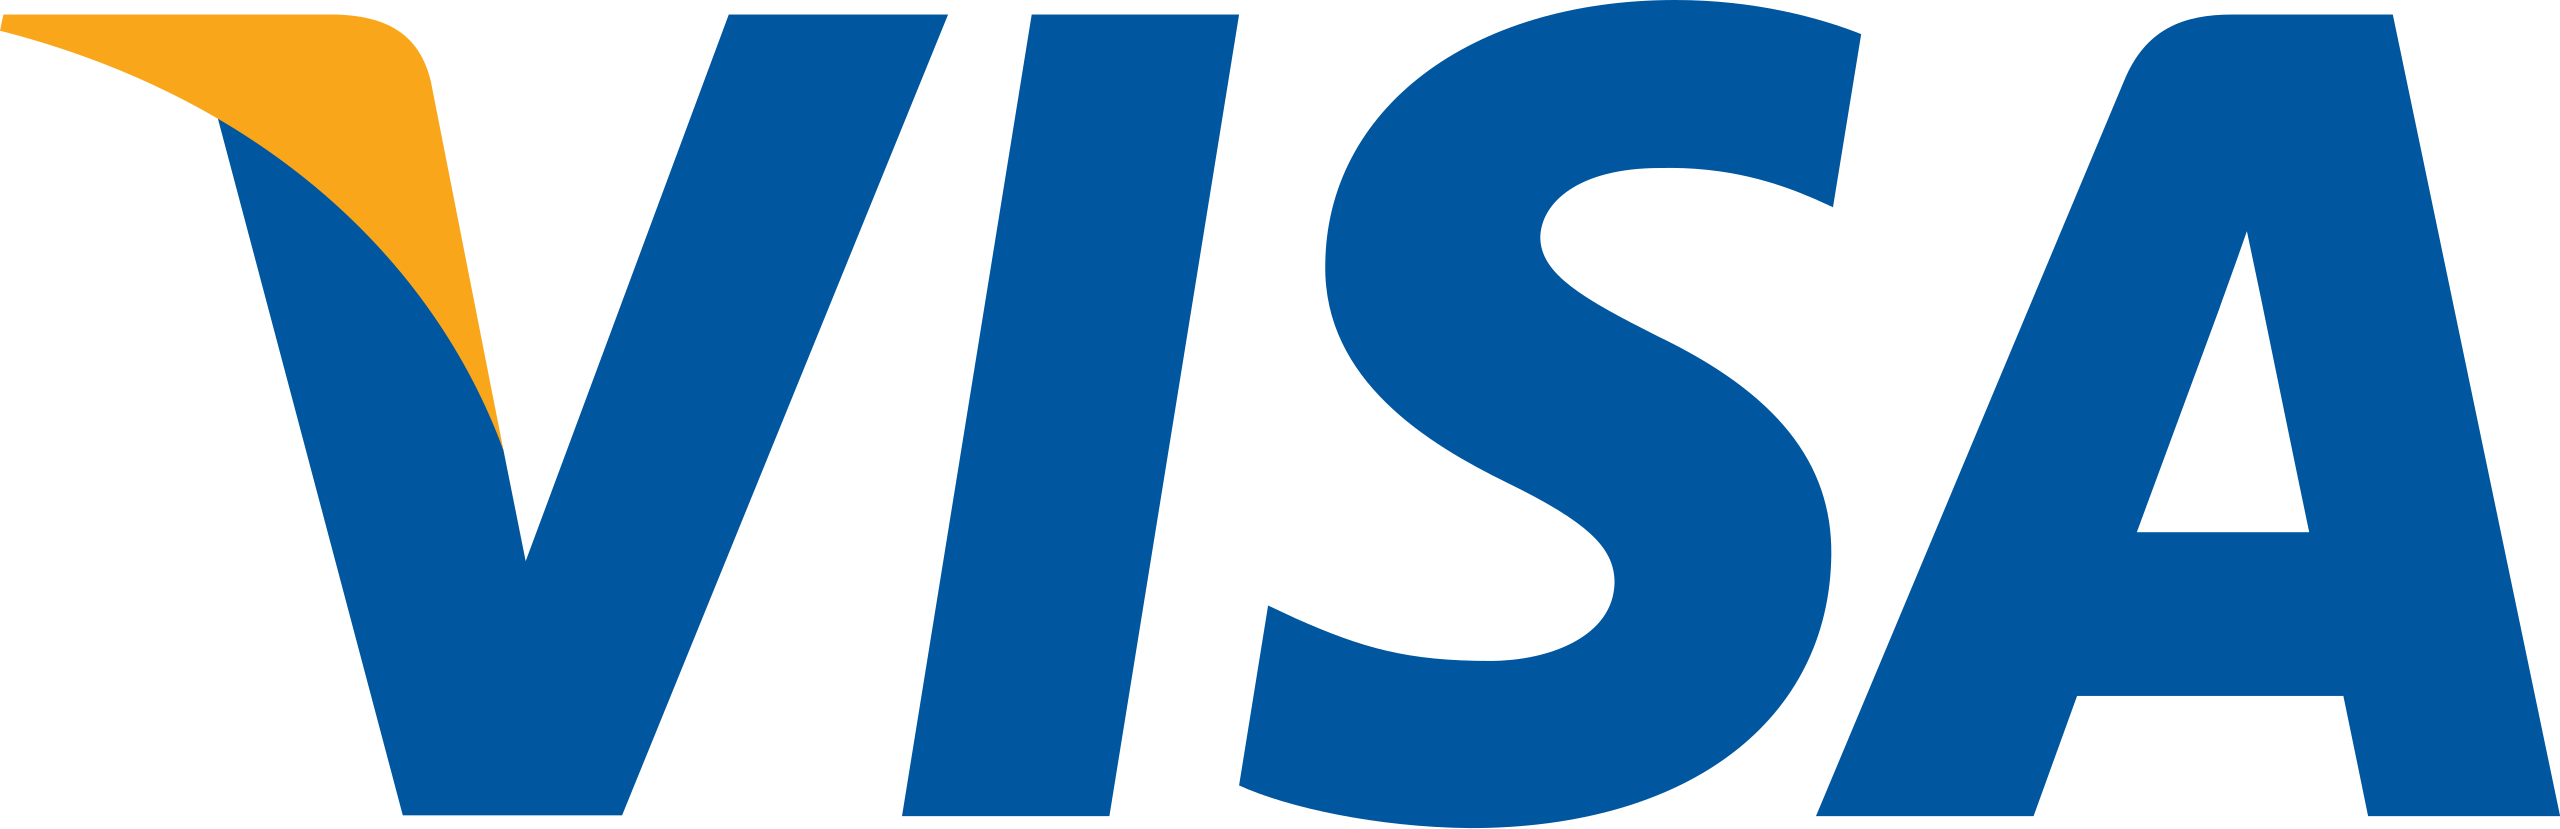 Visa Logo Image - KibrisPDR